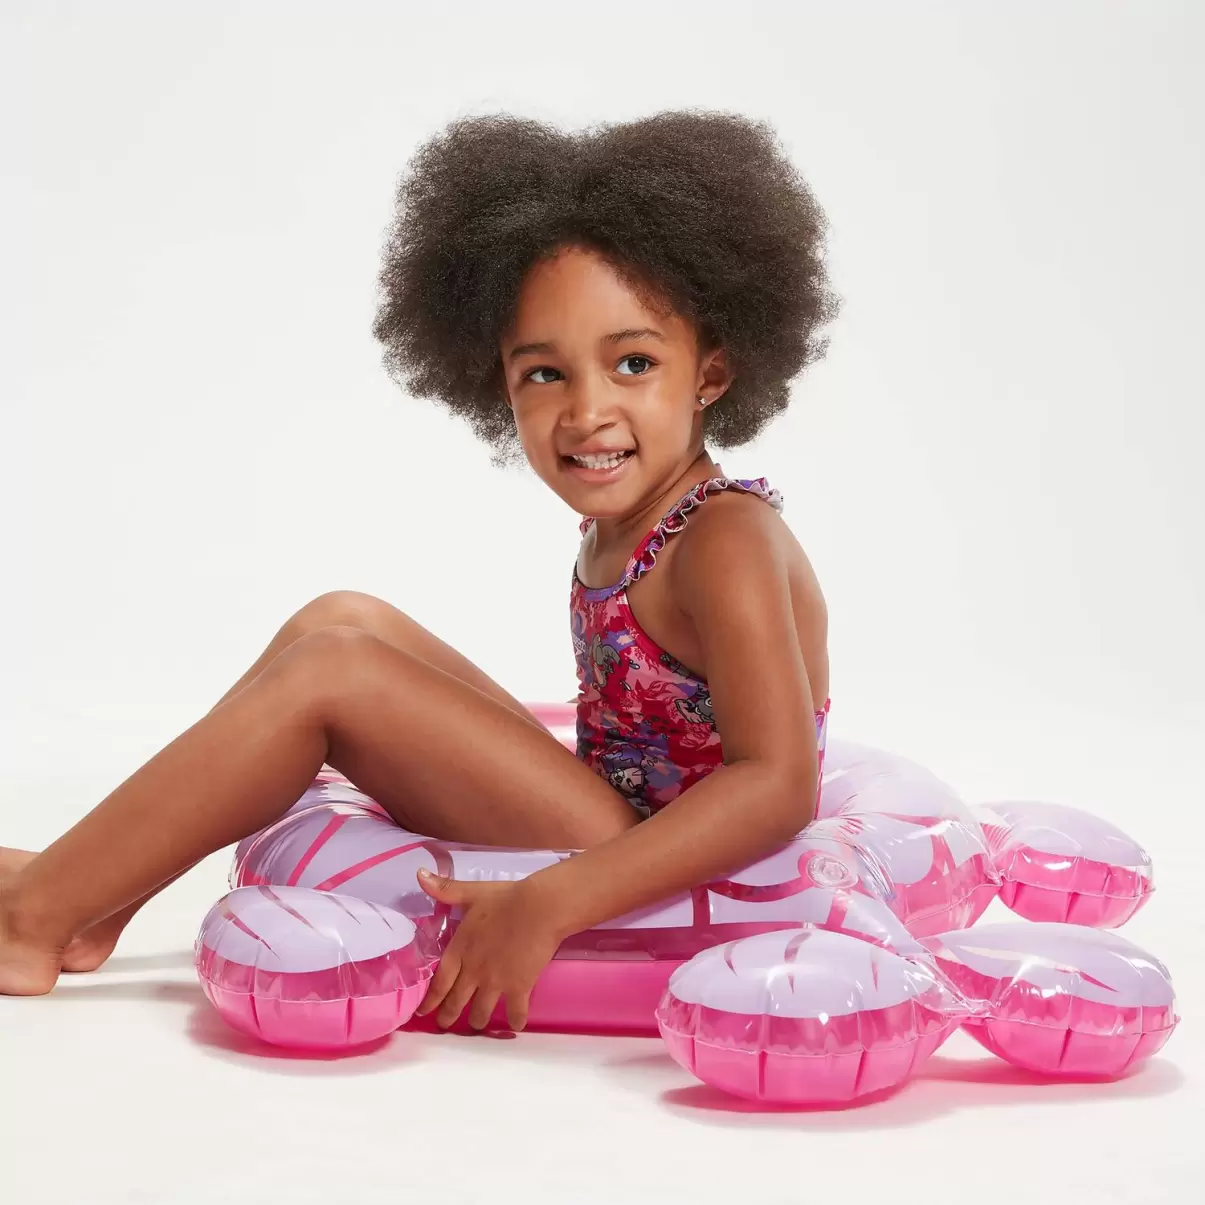 Schwimmlern-Rüschen-Badeanzug Mit Dünnen Trägern Für Mädchen Im Kleinkindalter Pink Speedo Mädchen Bademode Kinder - 2